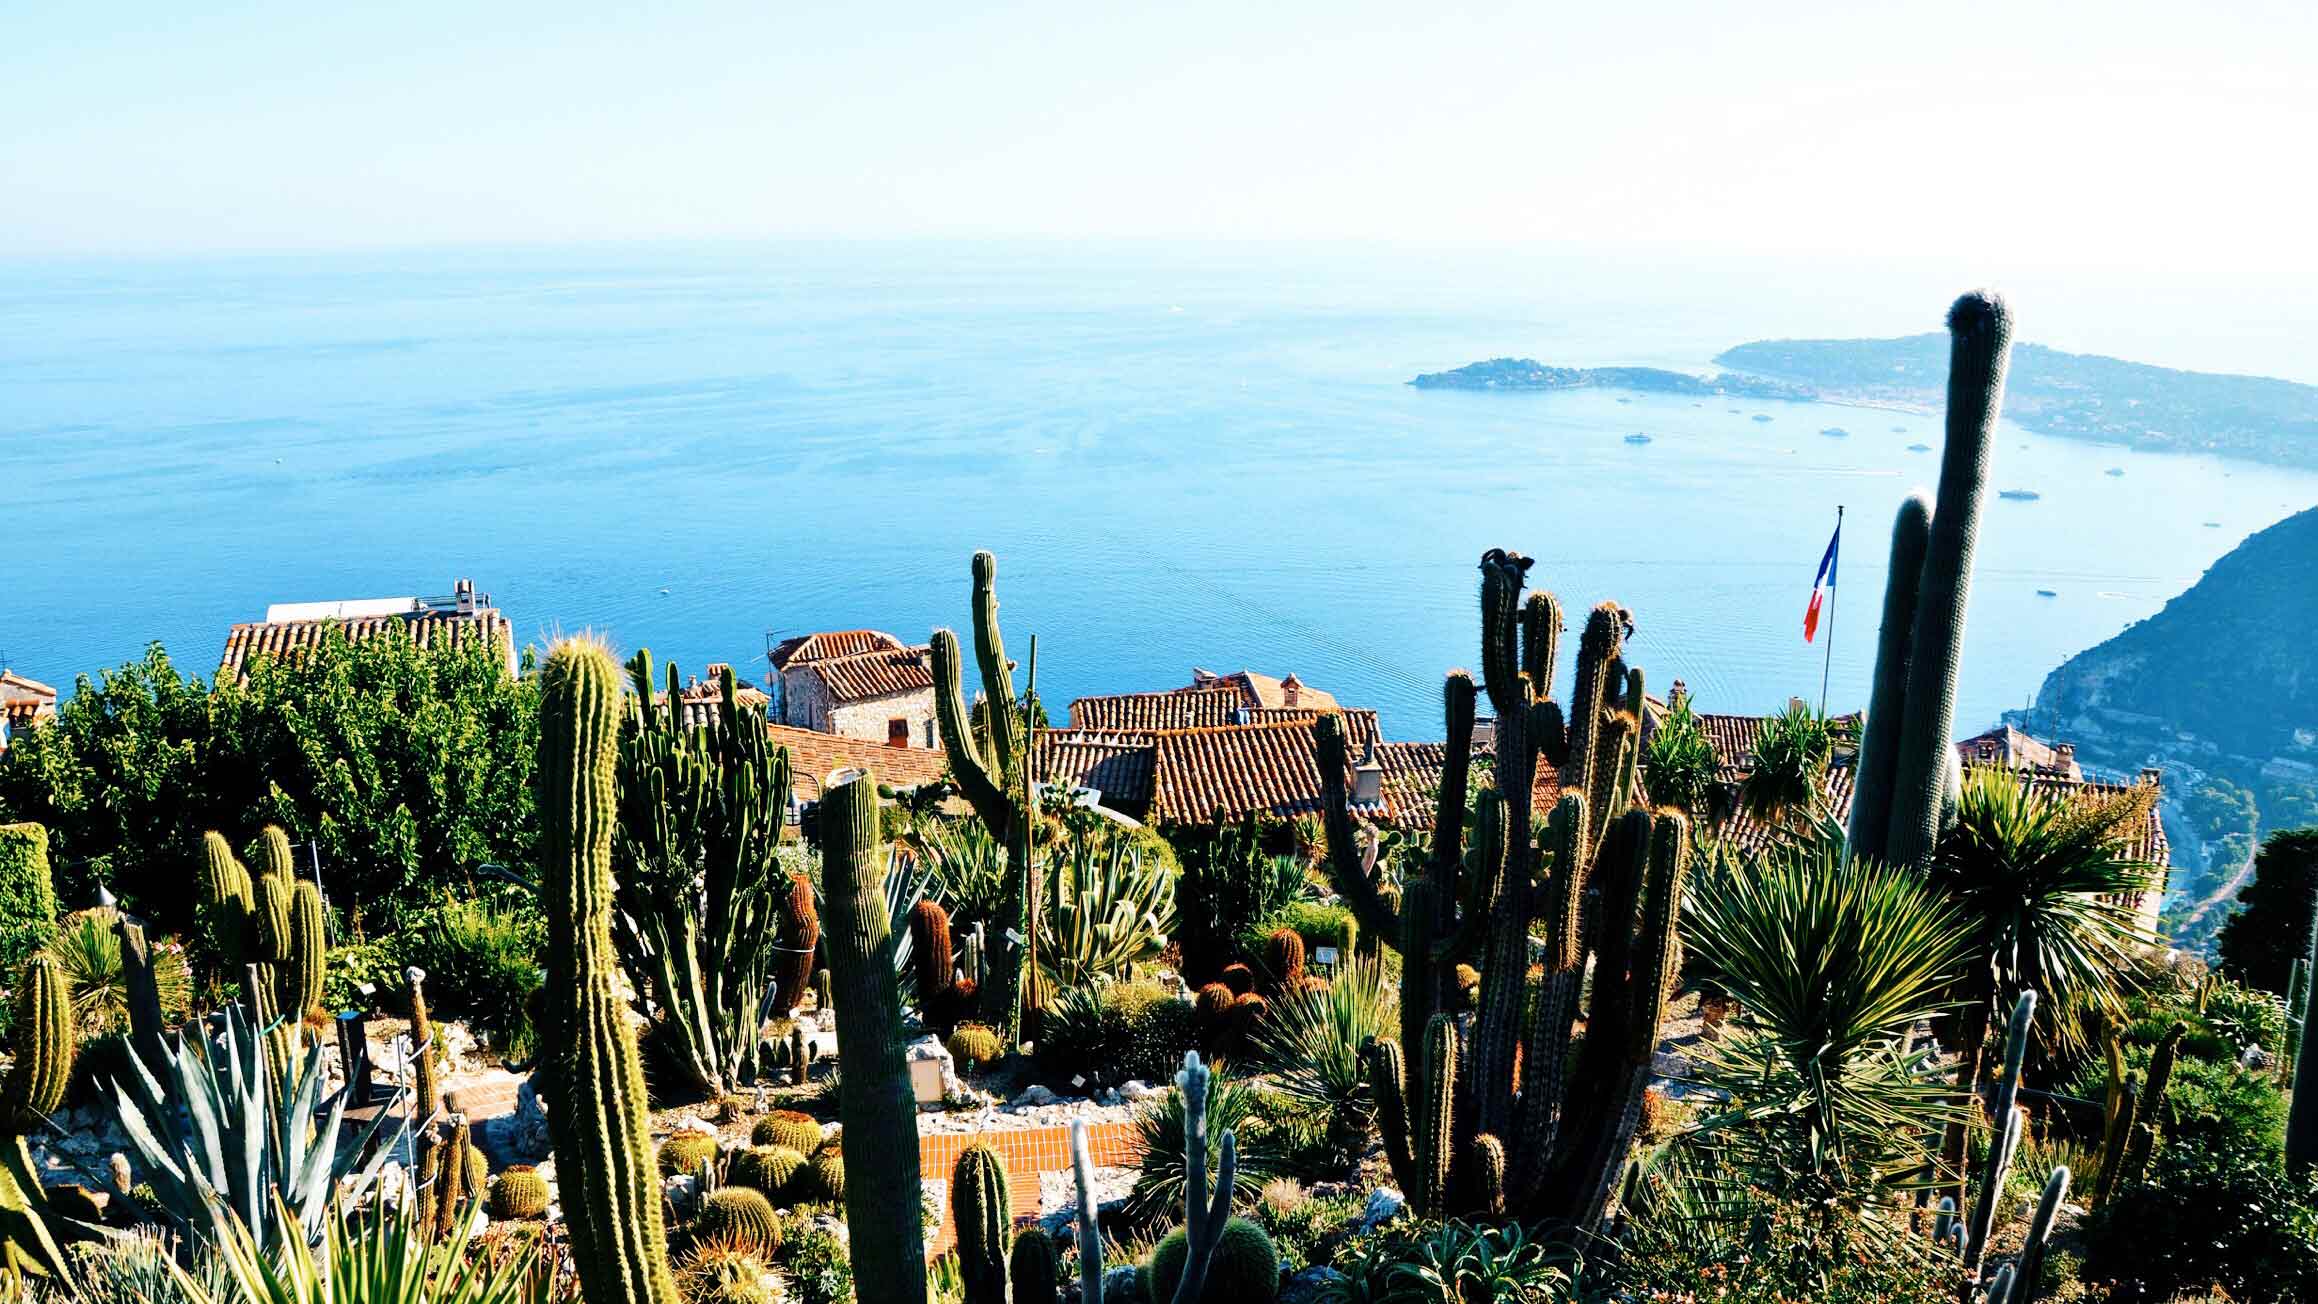 Vila medieval Èze Village, no sul da França, Mar Mediterrâneo azul e Jardin Exotique d'eee com cactos e horizonte